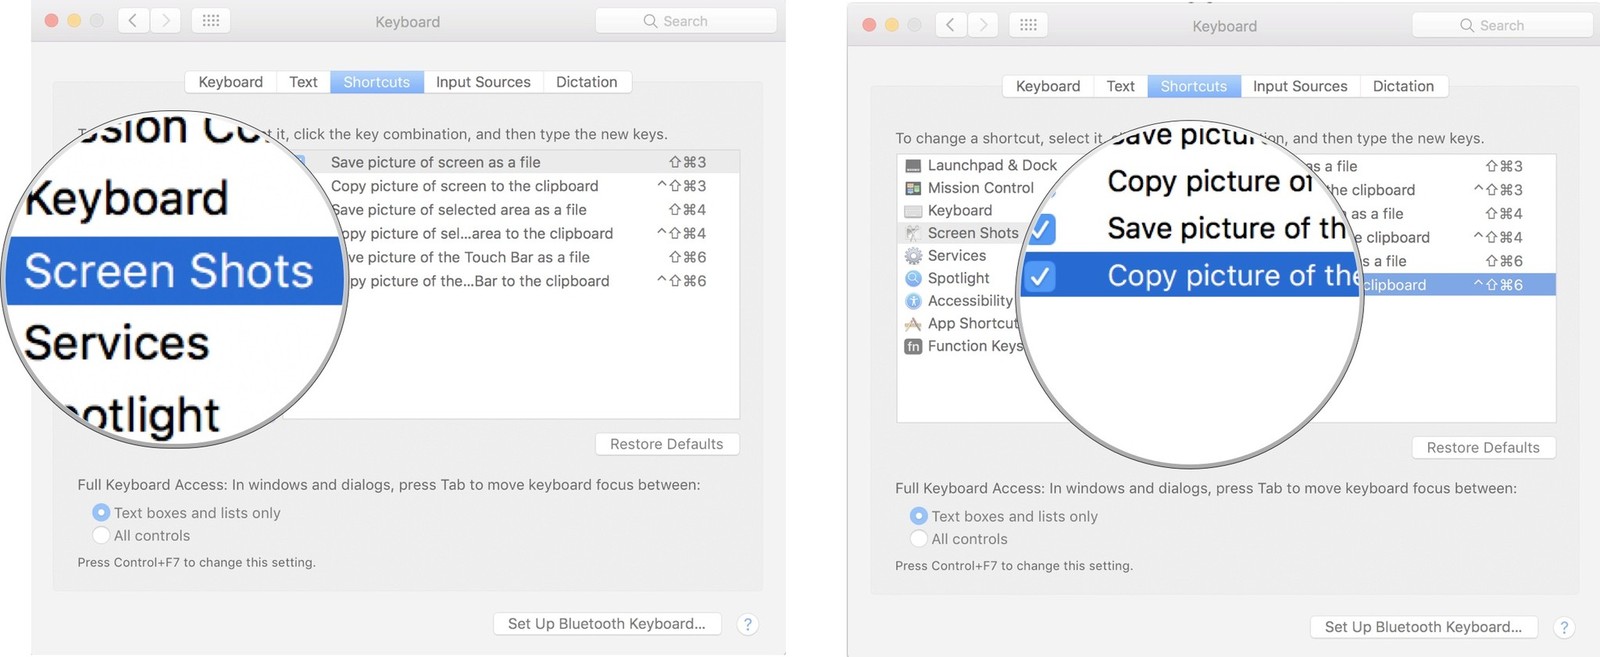 mac shortcut for screenshot to clipboard